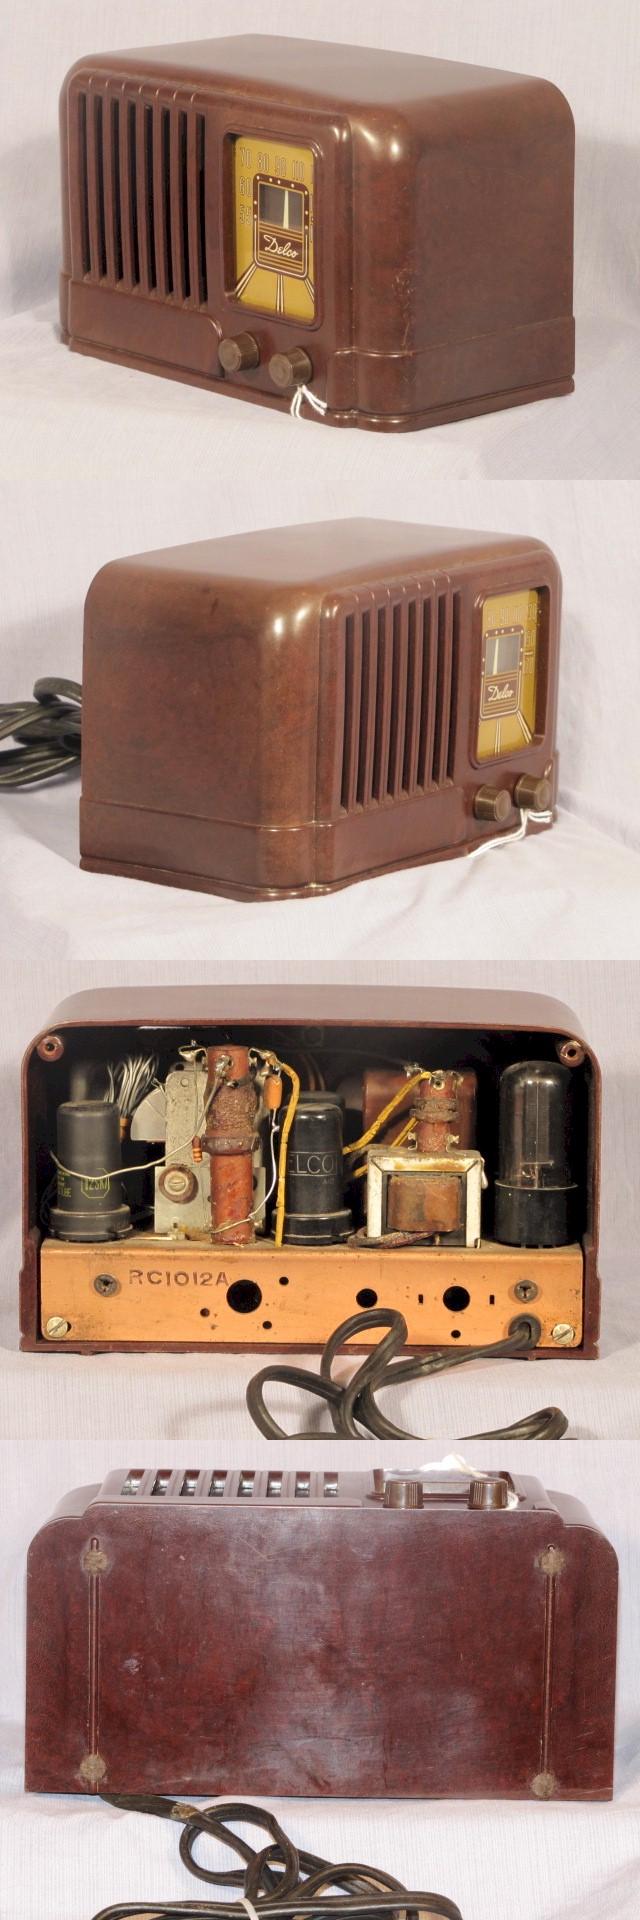 Delco Radio (1940s)